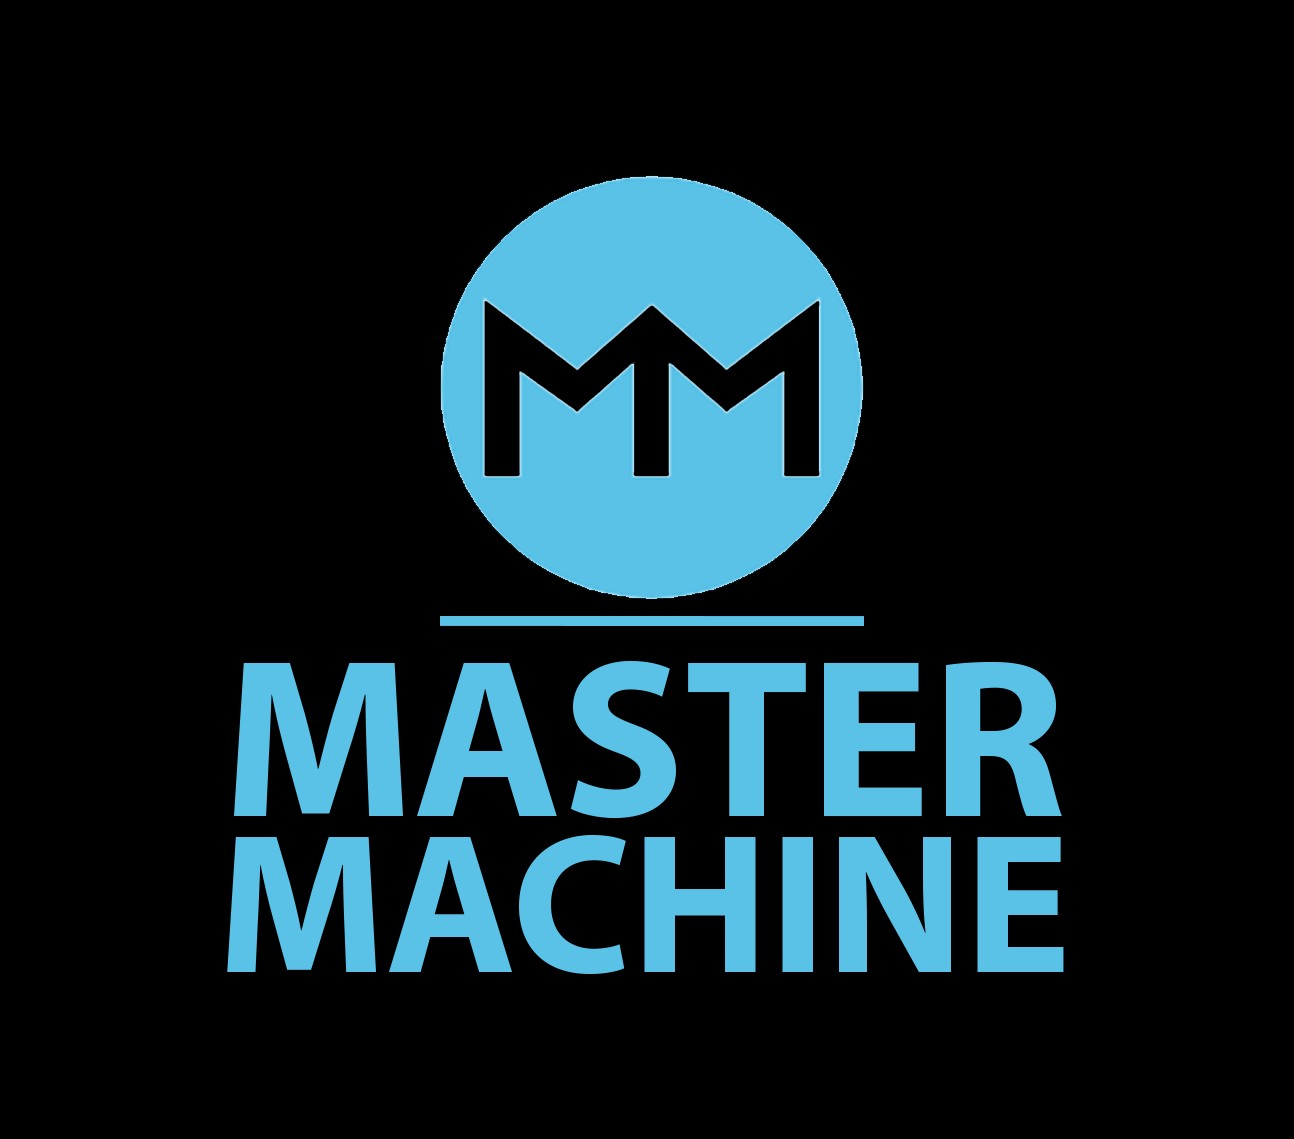 MASTER MACHINE